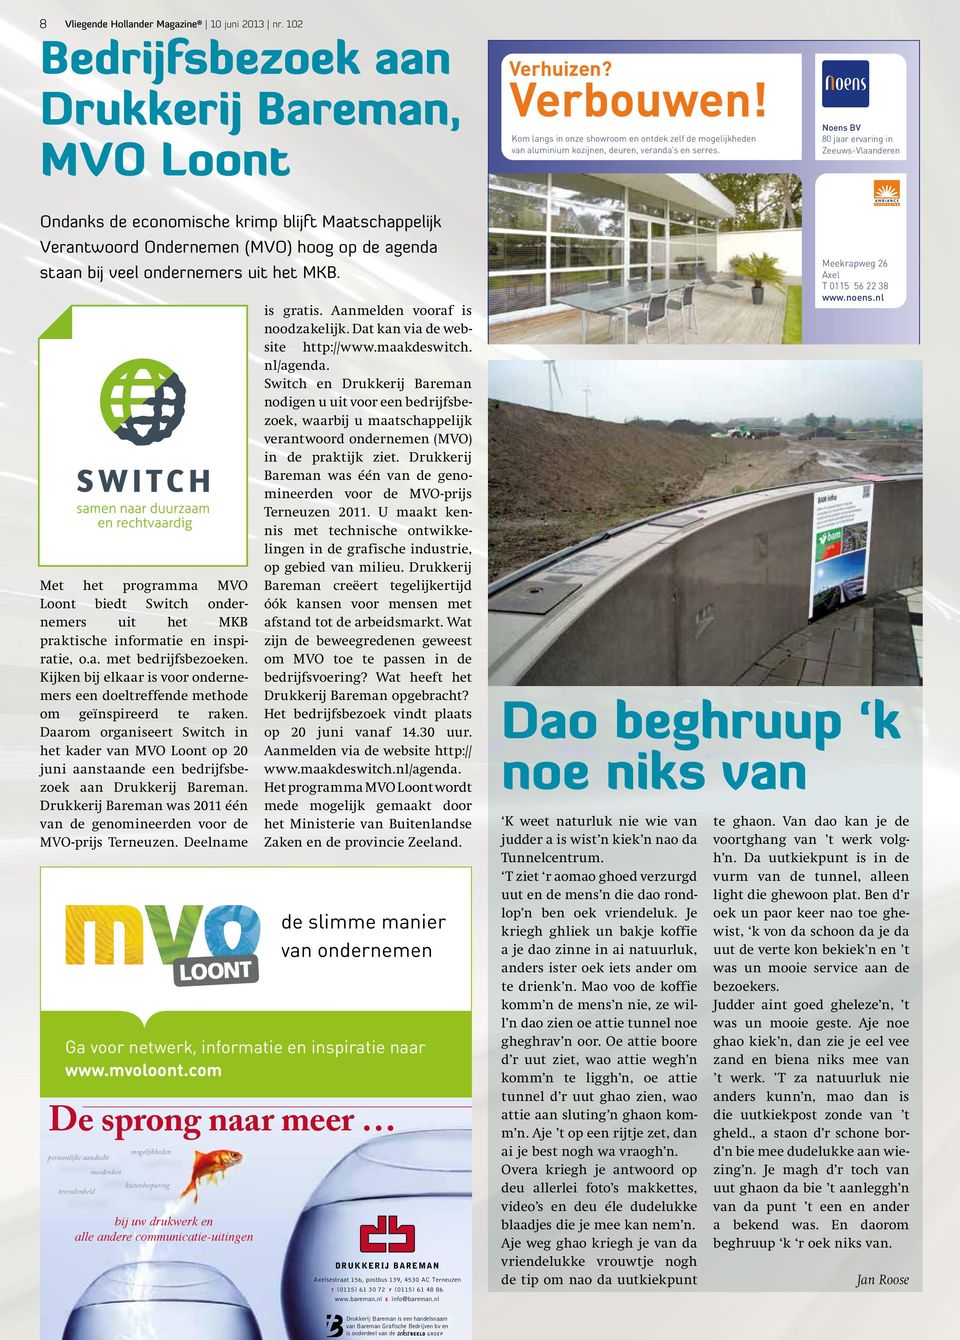 Noens BV 80 jaar ervaring in Zeeuws-Vlaanderen Ondanks de economische krimp blijft Maatschappelijk Verantwoord Ondernemen (MVO) hoog op de agenda staan bij veel ondernemers uit het MKB.